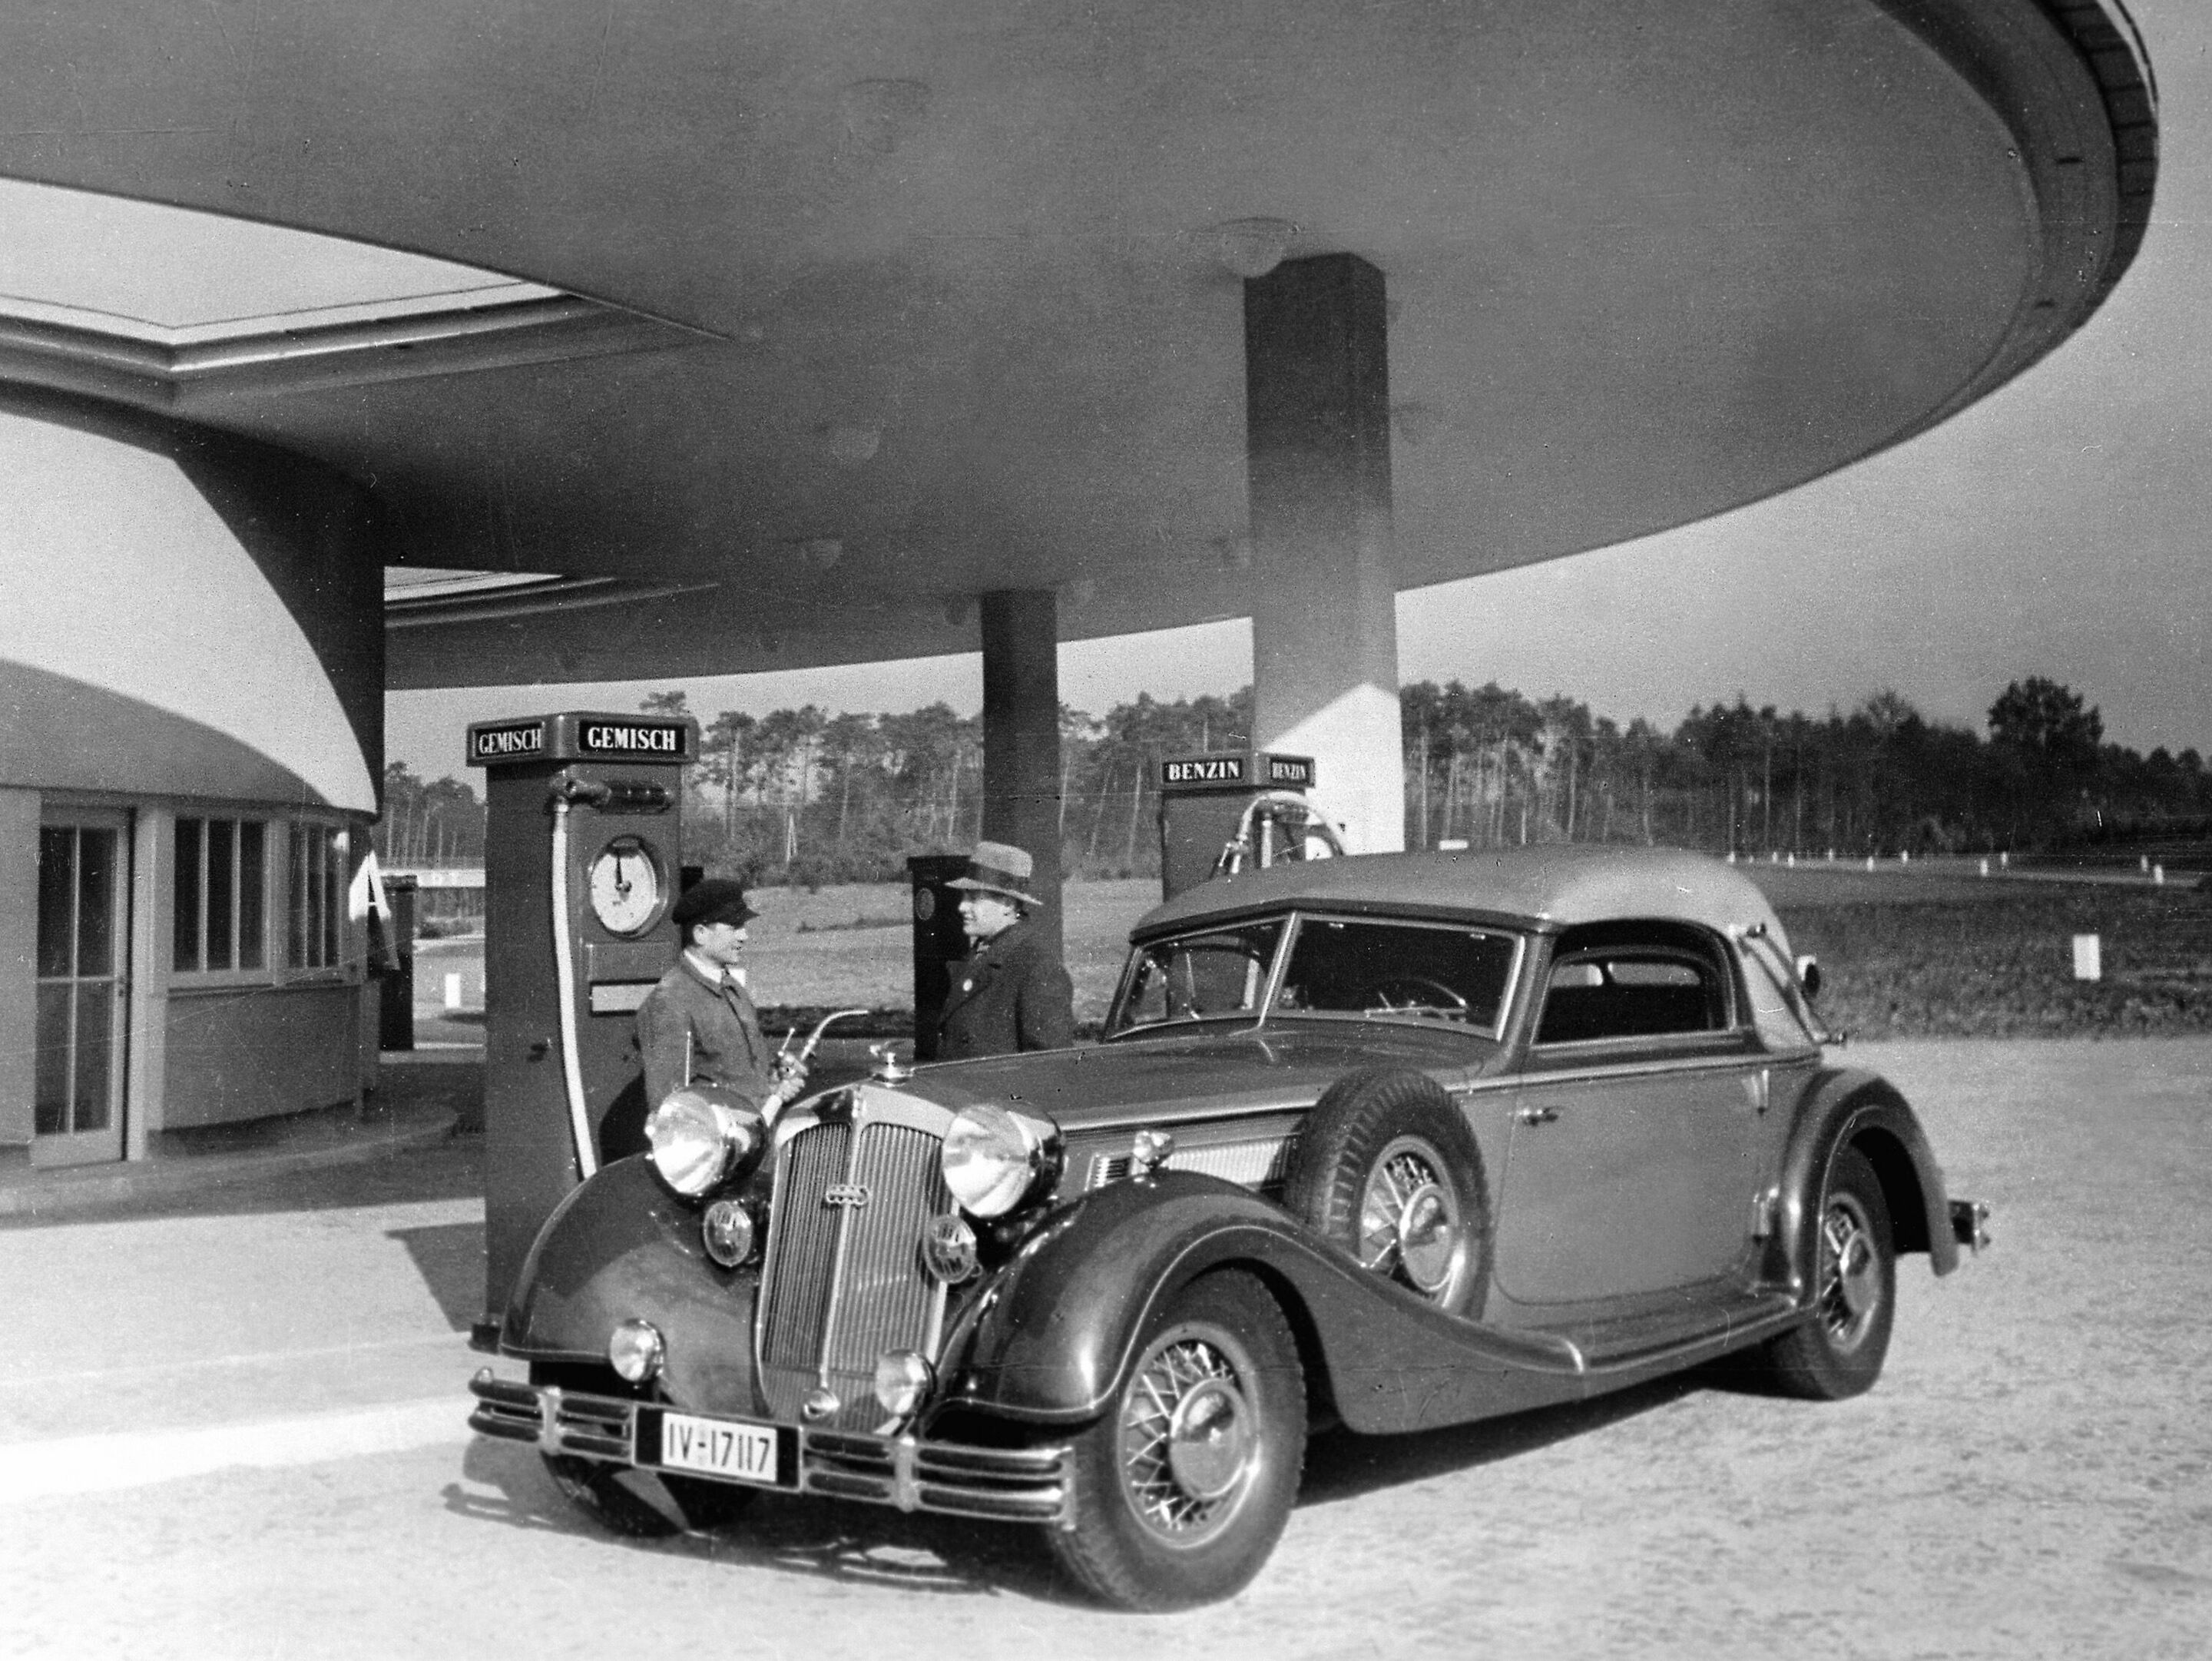 Autobahn-Tankstelle in Deutschland Ende der 30er-Jahre: Ein Horch 853 Sport-Cabriolet (1935 - 1940) tankt gerade das damals übliche Benzin-Benzol-Gemisch.